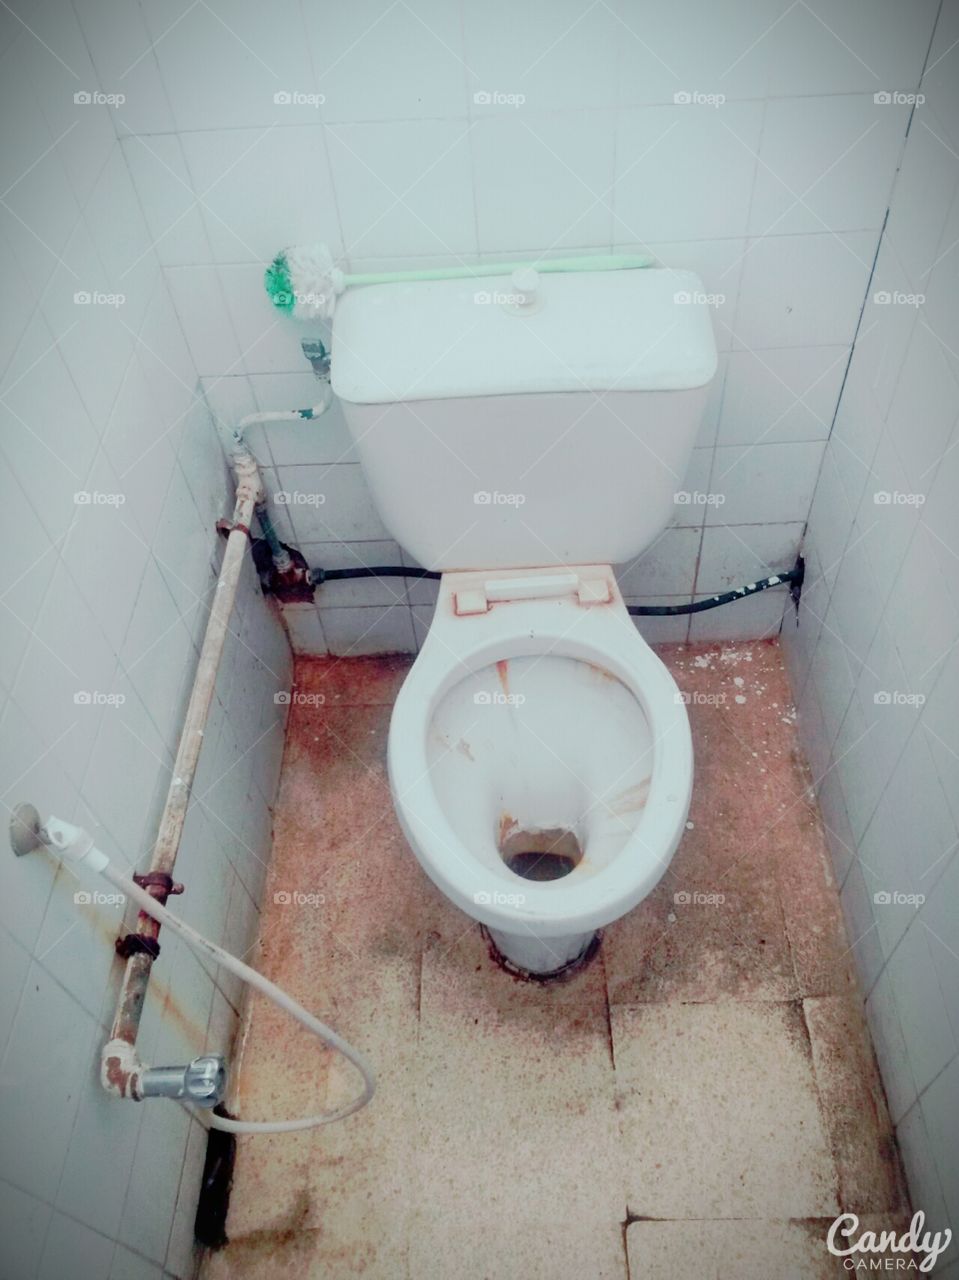 public toilets. public toilets